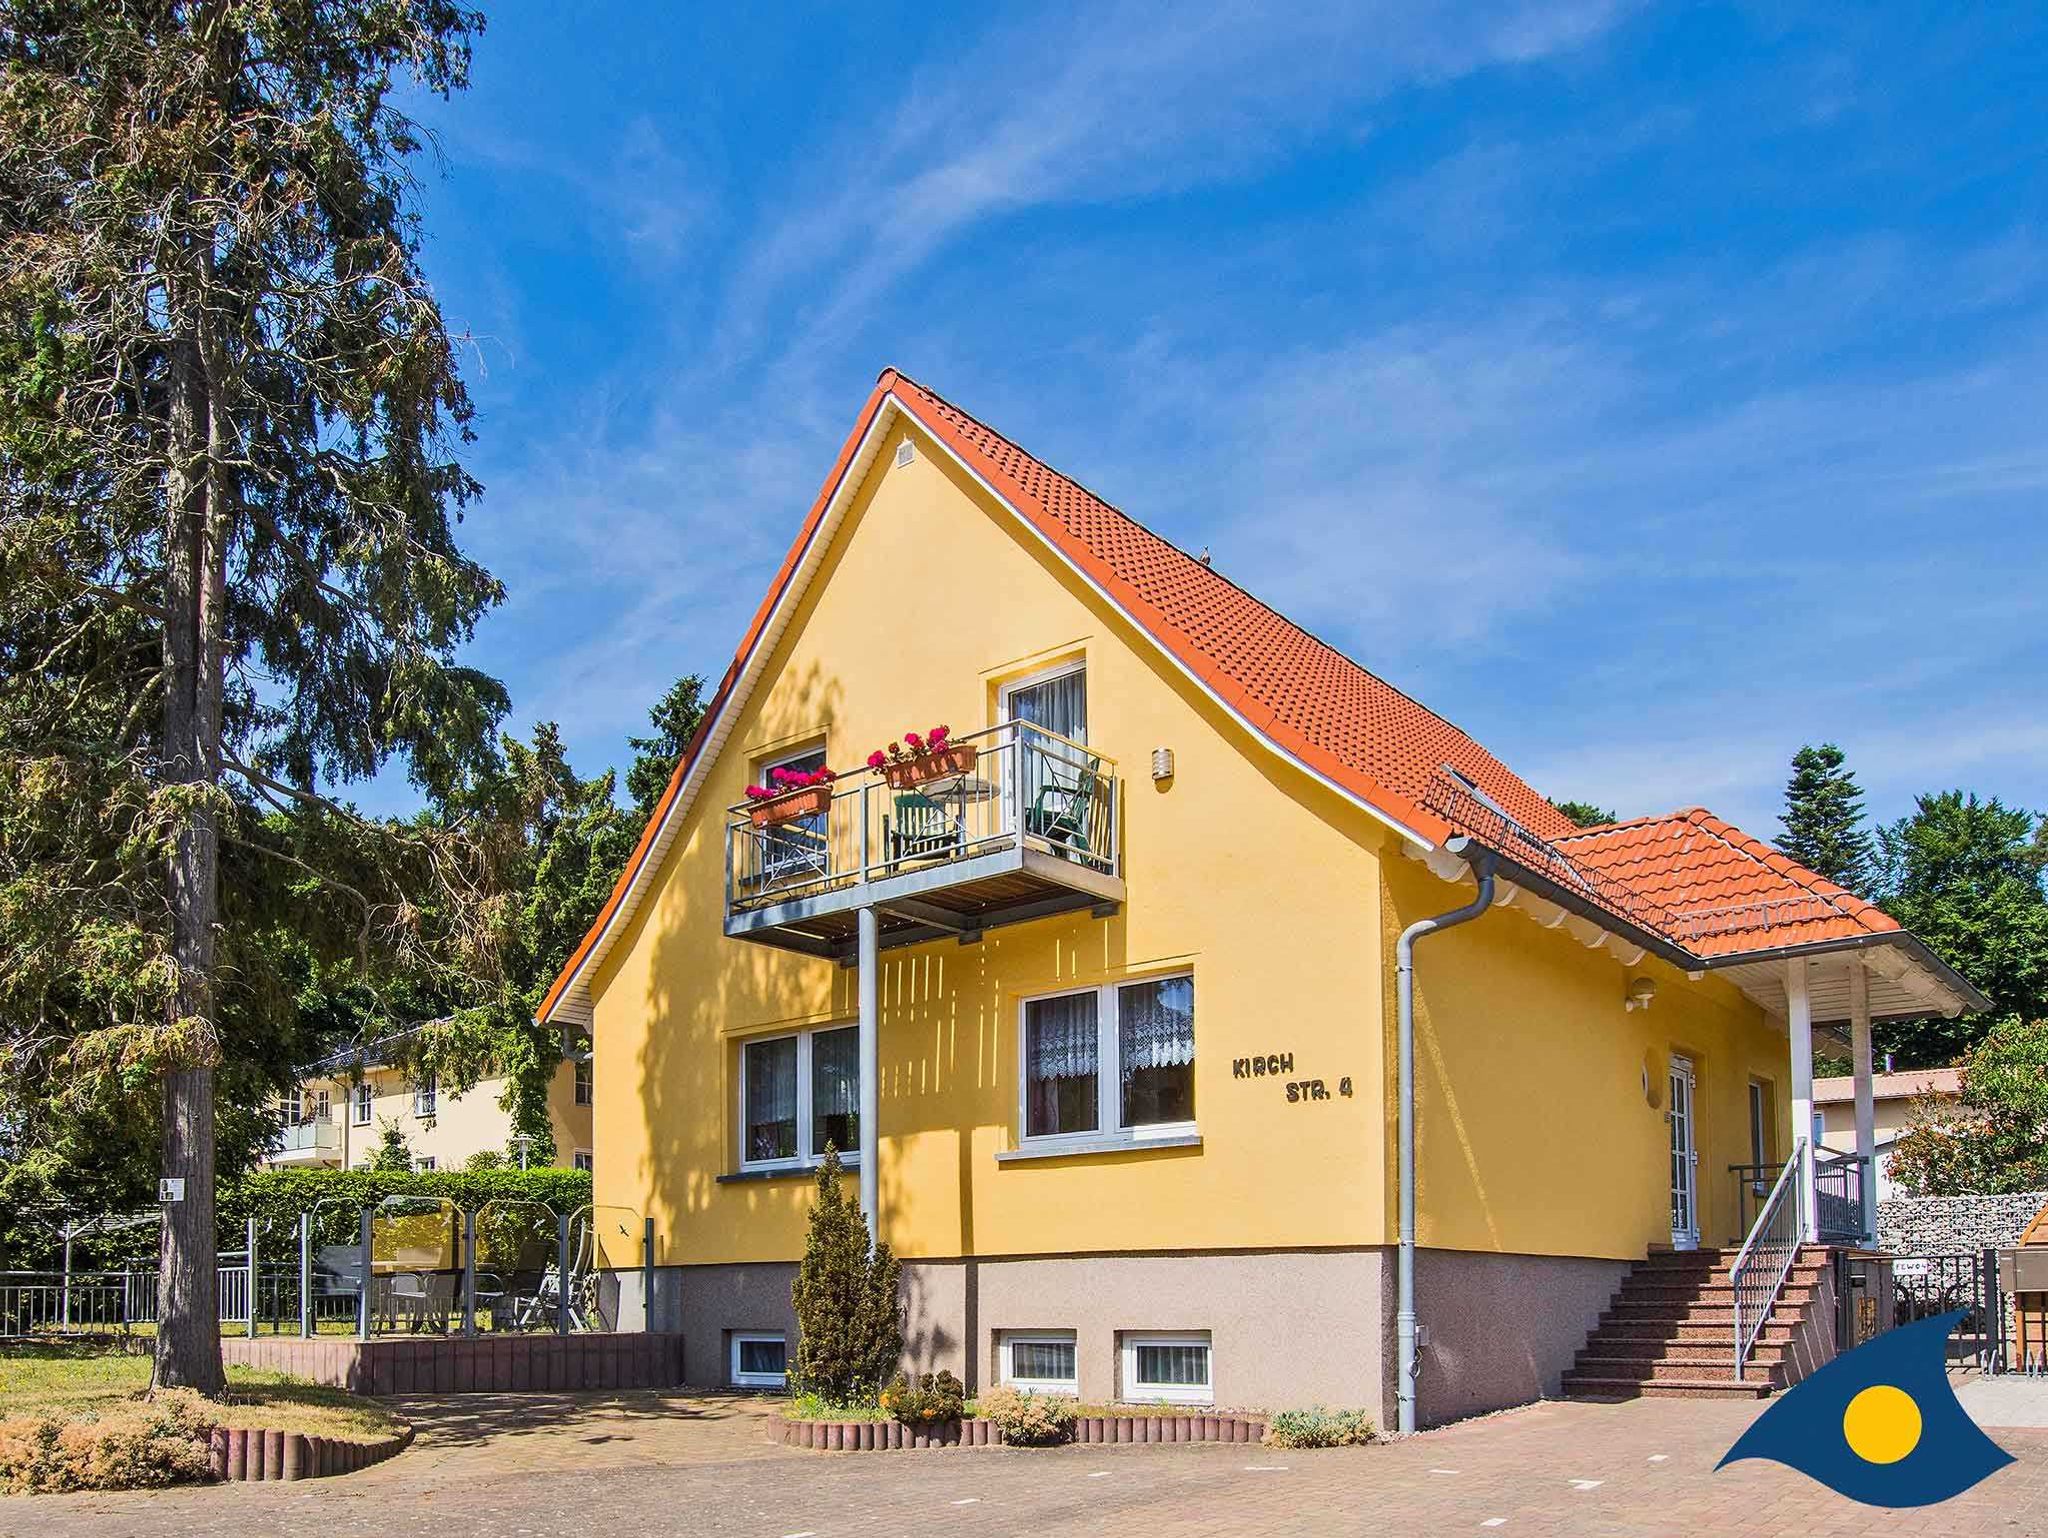 Mein Ostseeferienhaus - Bungalow / Ferienhaus an der Ostsee - Holzferienhaus, 6 Personen, 2 Schlafzimmer, von privat zu mieten